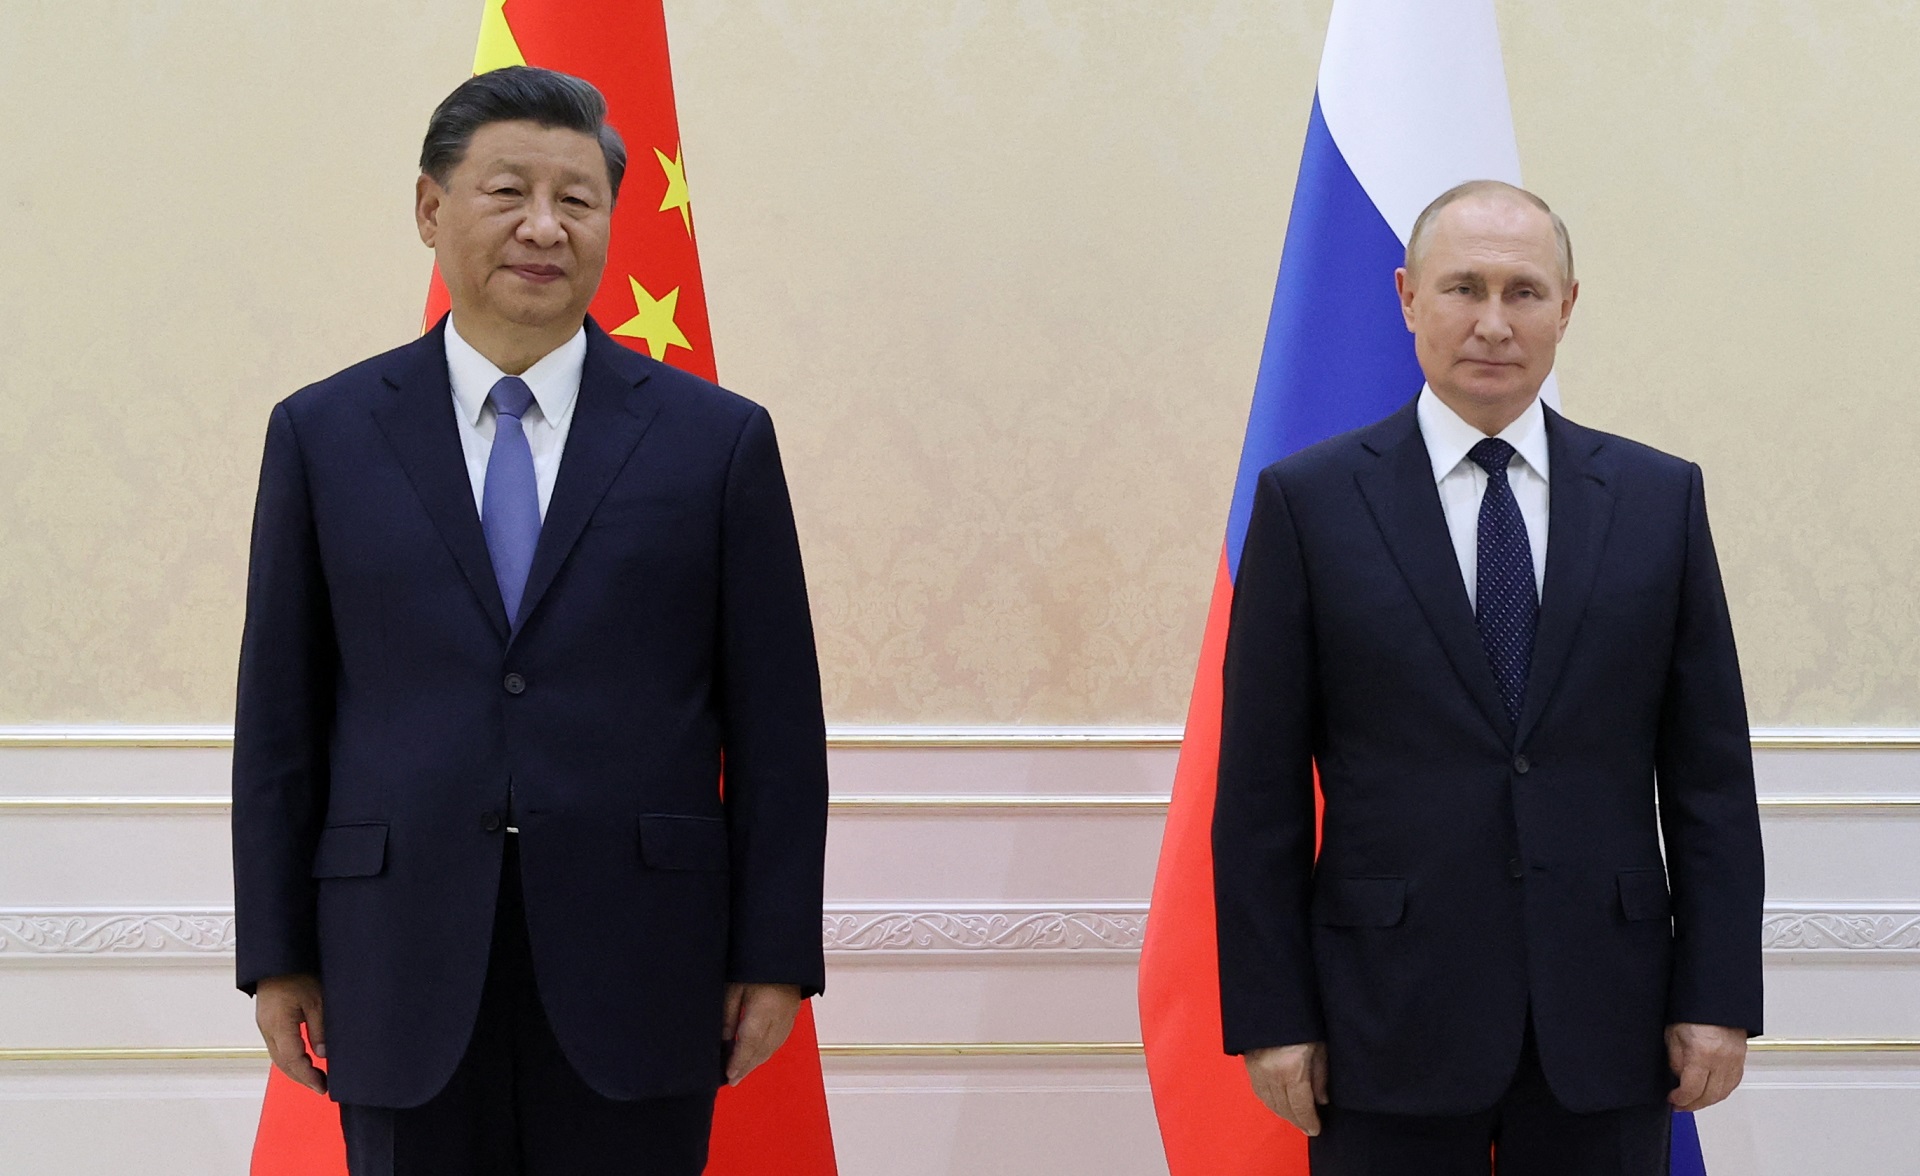 La semana pasada, tras un encuentro con su homólogo chino Xi Jinping, el presidente ruso Vladimir Putin saludó “la posición equilibrada” de Xi sobre Ucrania, pero también dijo que hay que “comprender sus interrogantes y sus preocupaciones” sobre la invasión que ya dura siete meses.